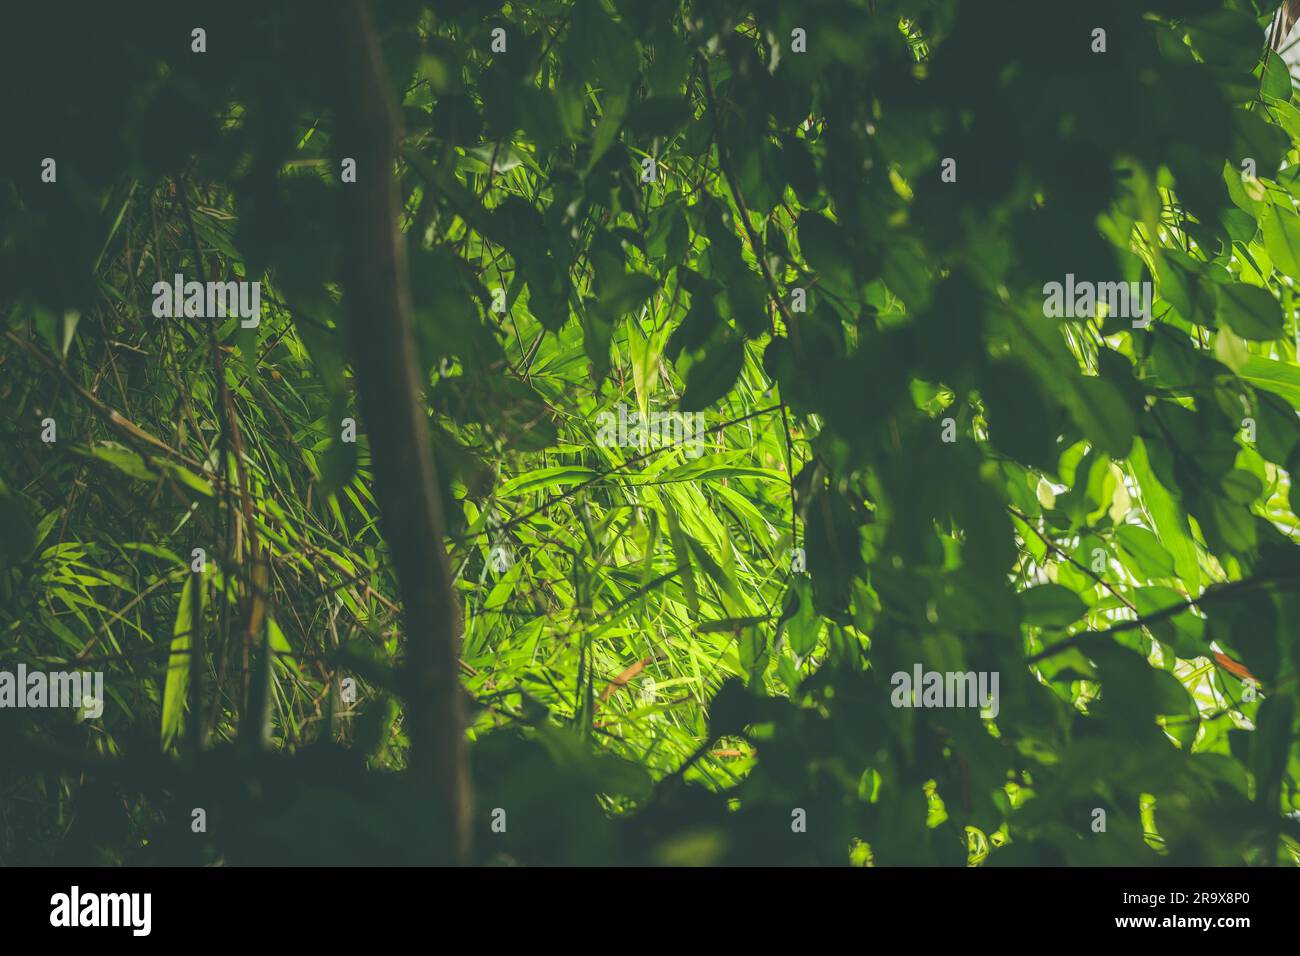 Forêt tropicale avec des plantes vertes et la végétation à la lumière du jour Banque D'Images